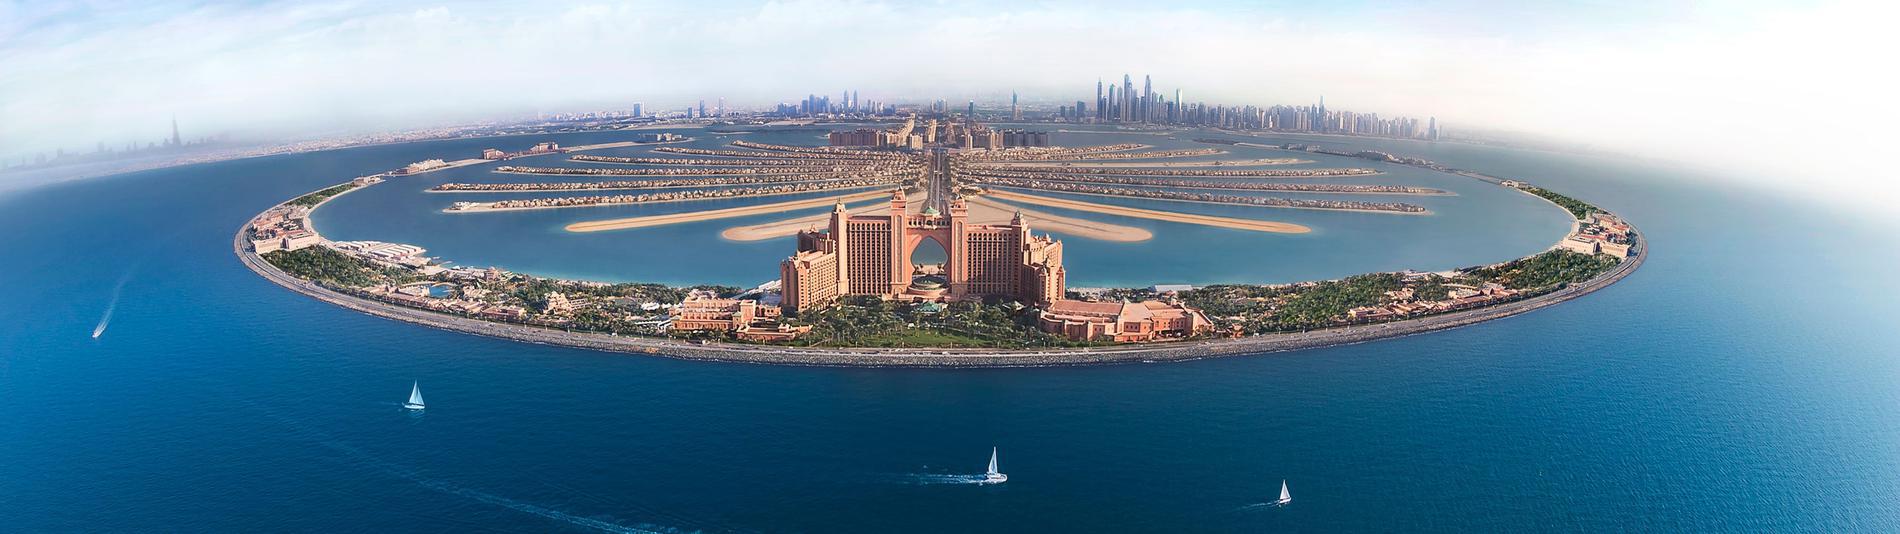 Tour du lịch Dubai (UAE)